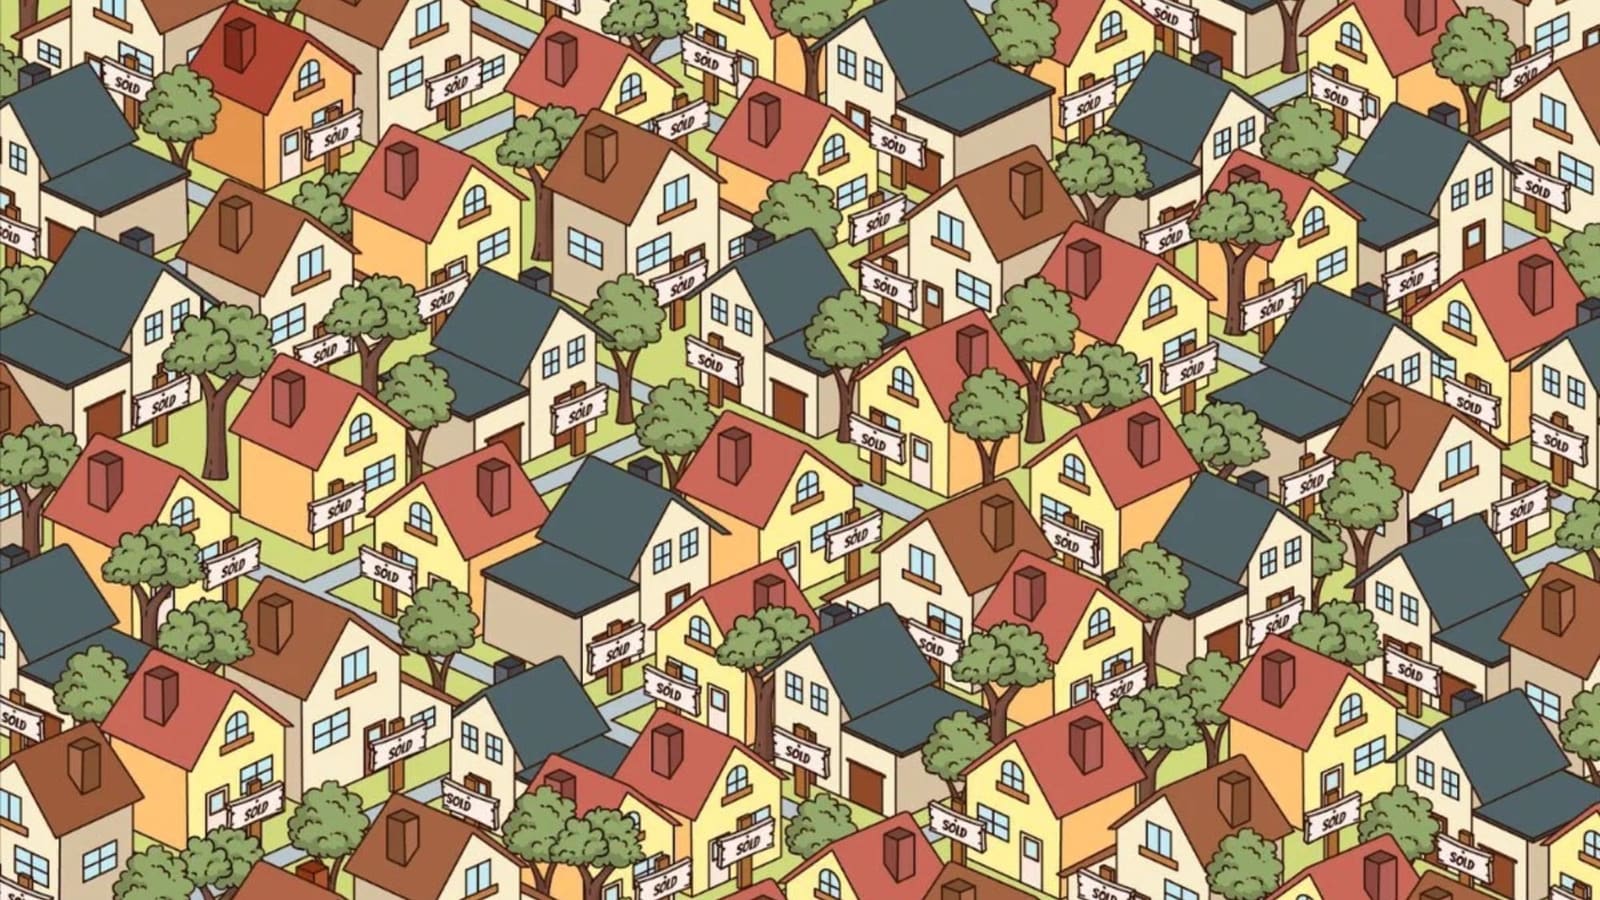 ‘Find the house for sale’: Harsh Goenka shares brain teaser challenge